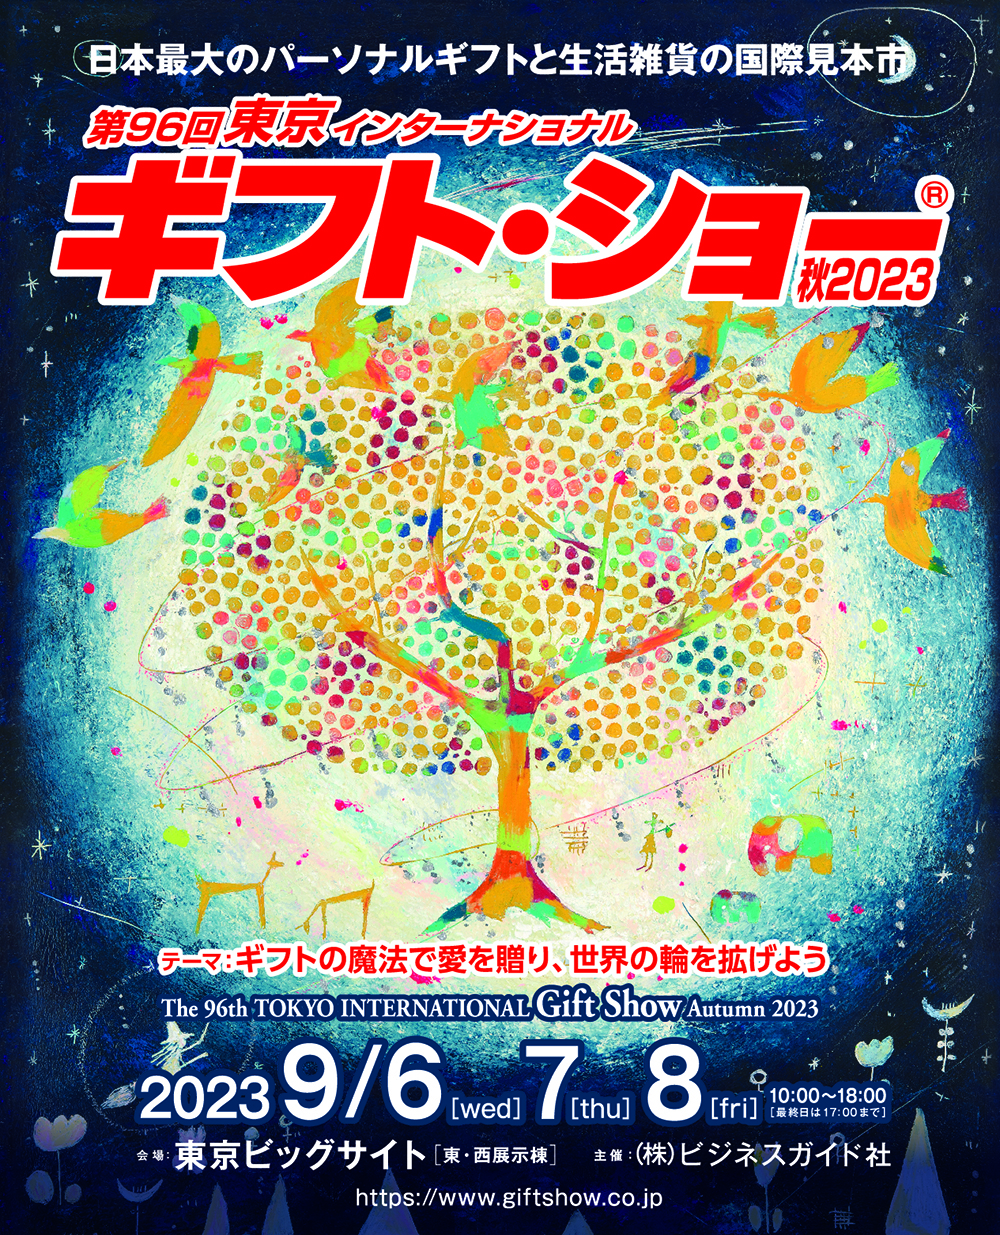 東京ビッグサイトで開催される「第96回ギフト・ショー秋2023」「manicolle tokyo」にフレンズヒルが出展します。